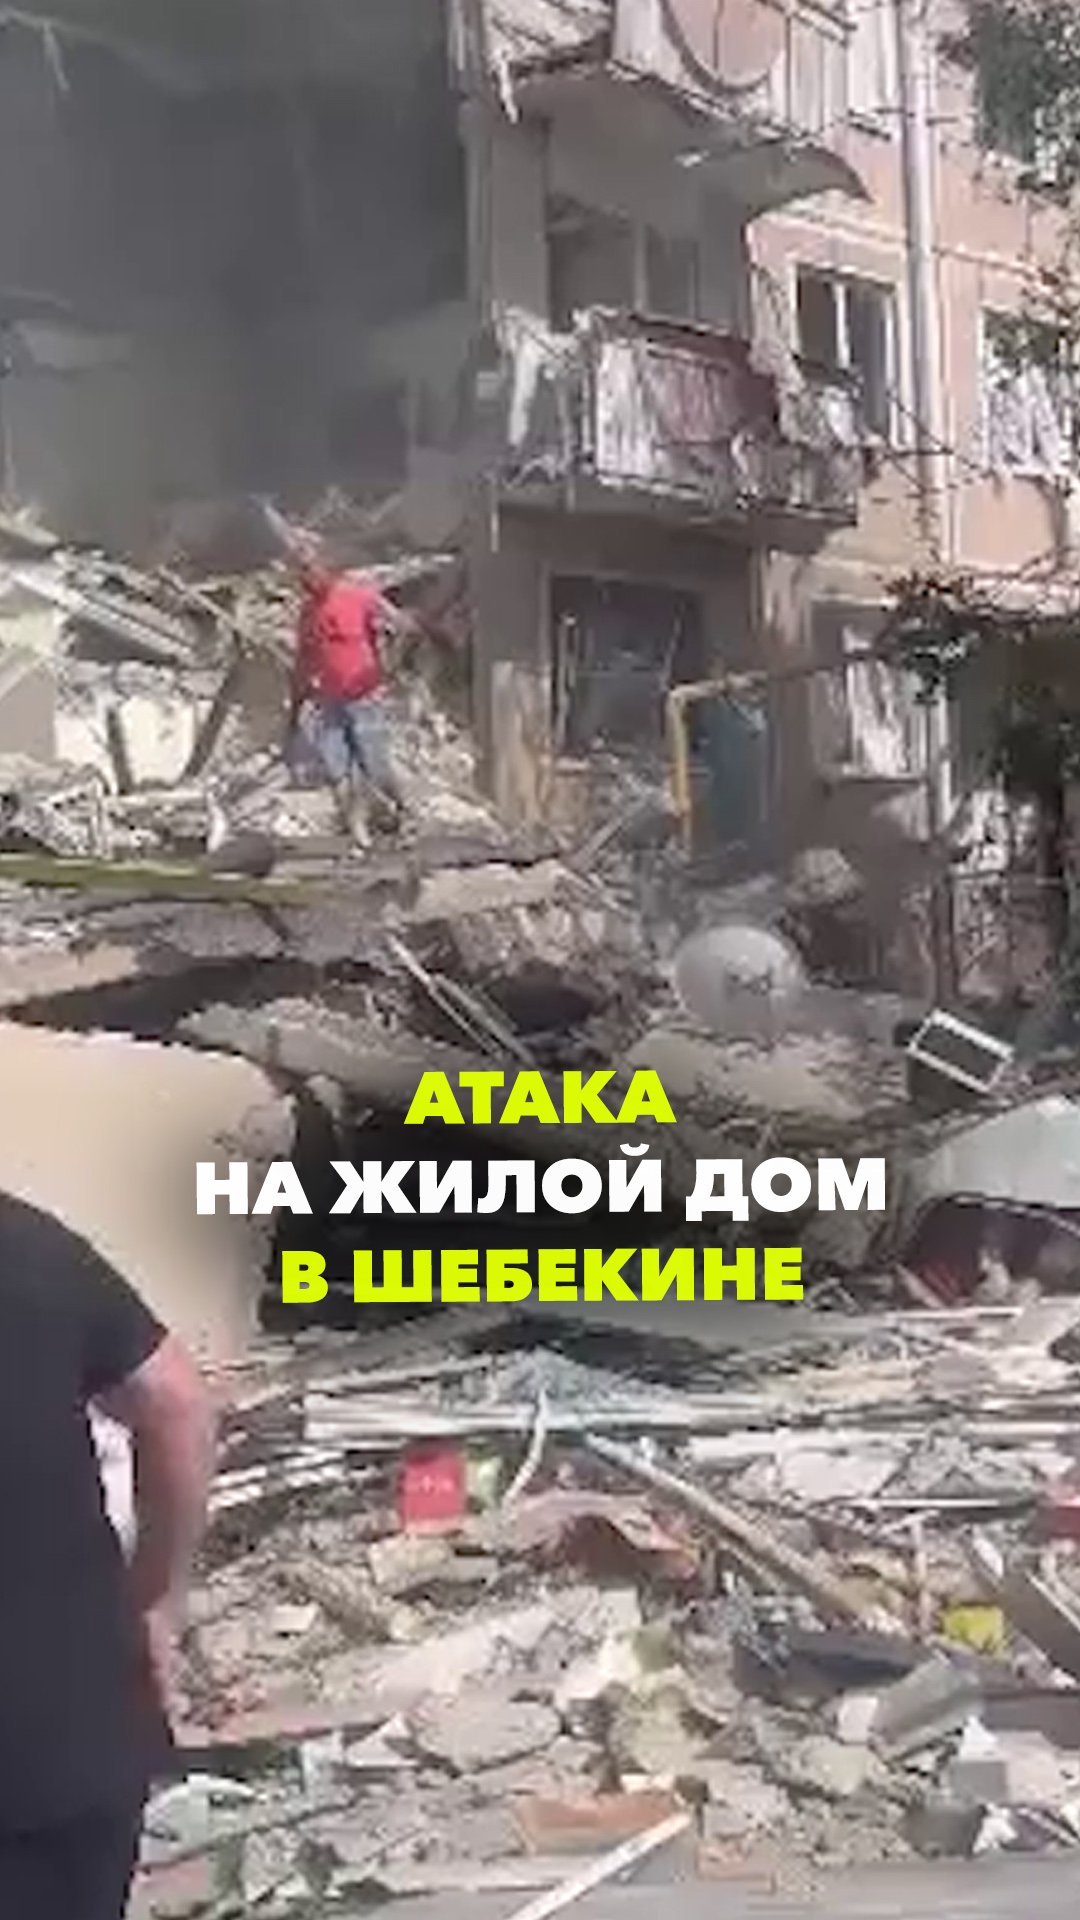 ВСУ атаковали жилой дом в Шебекино